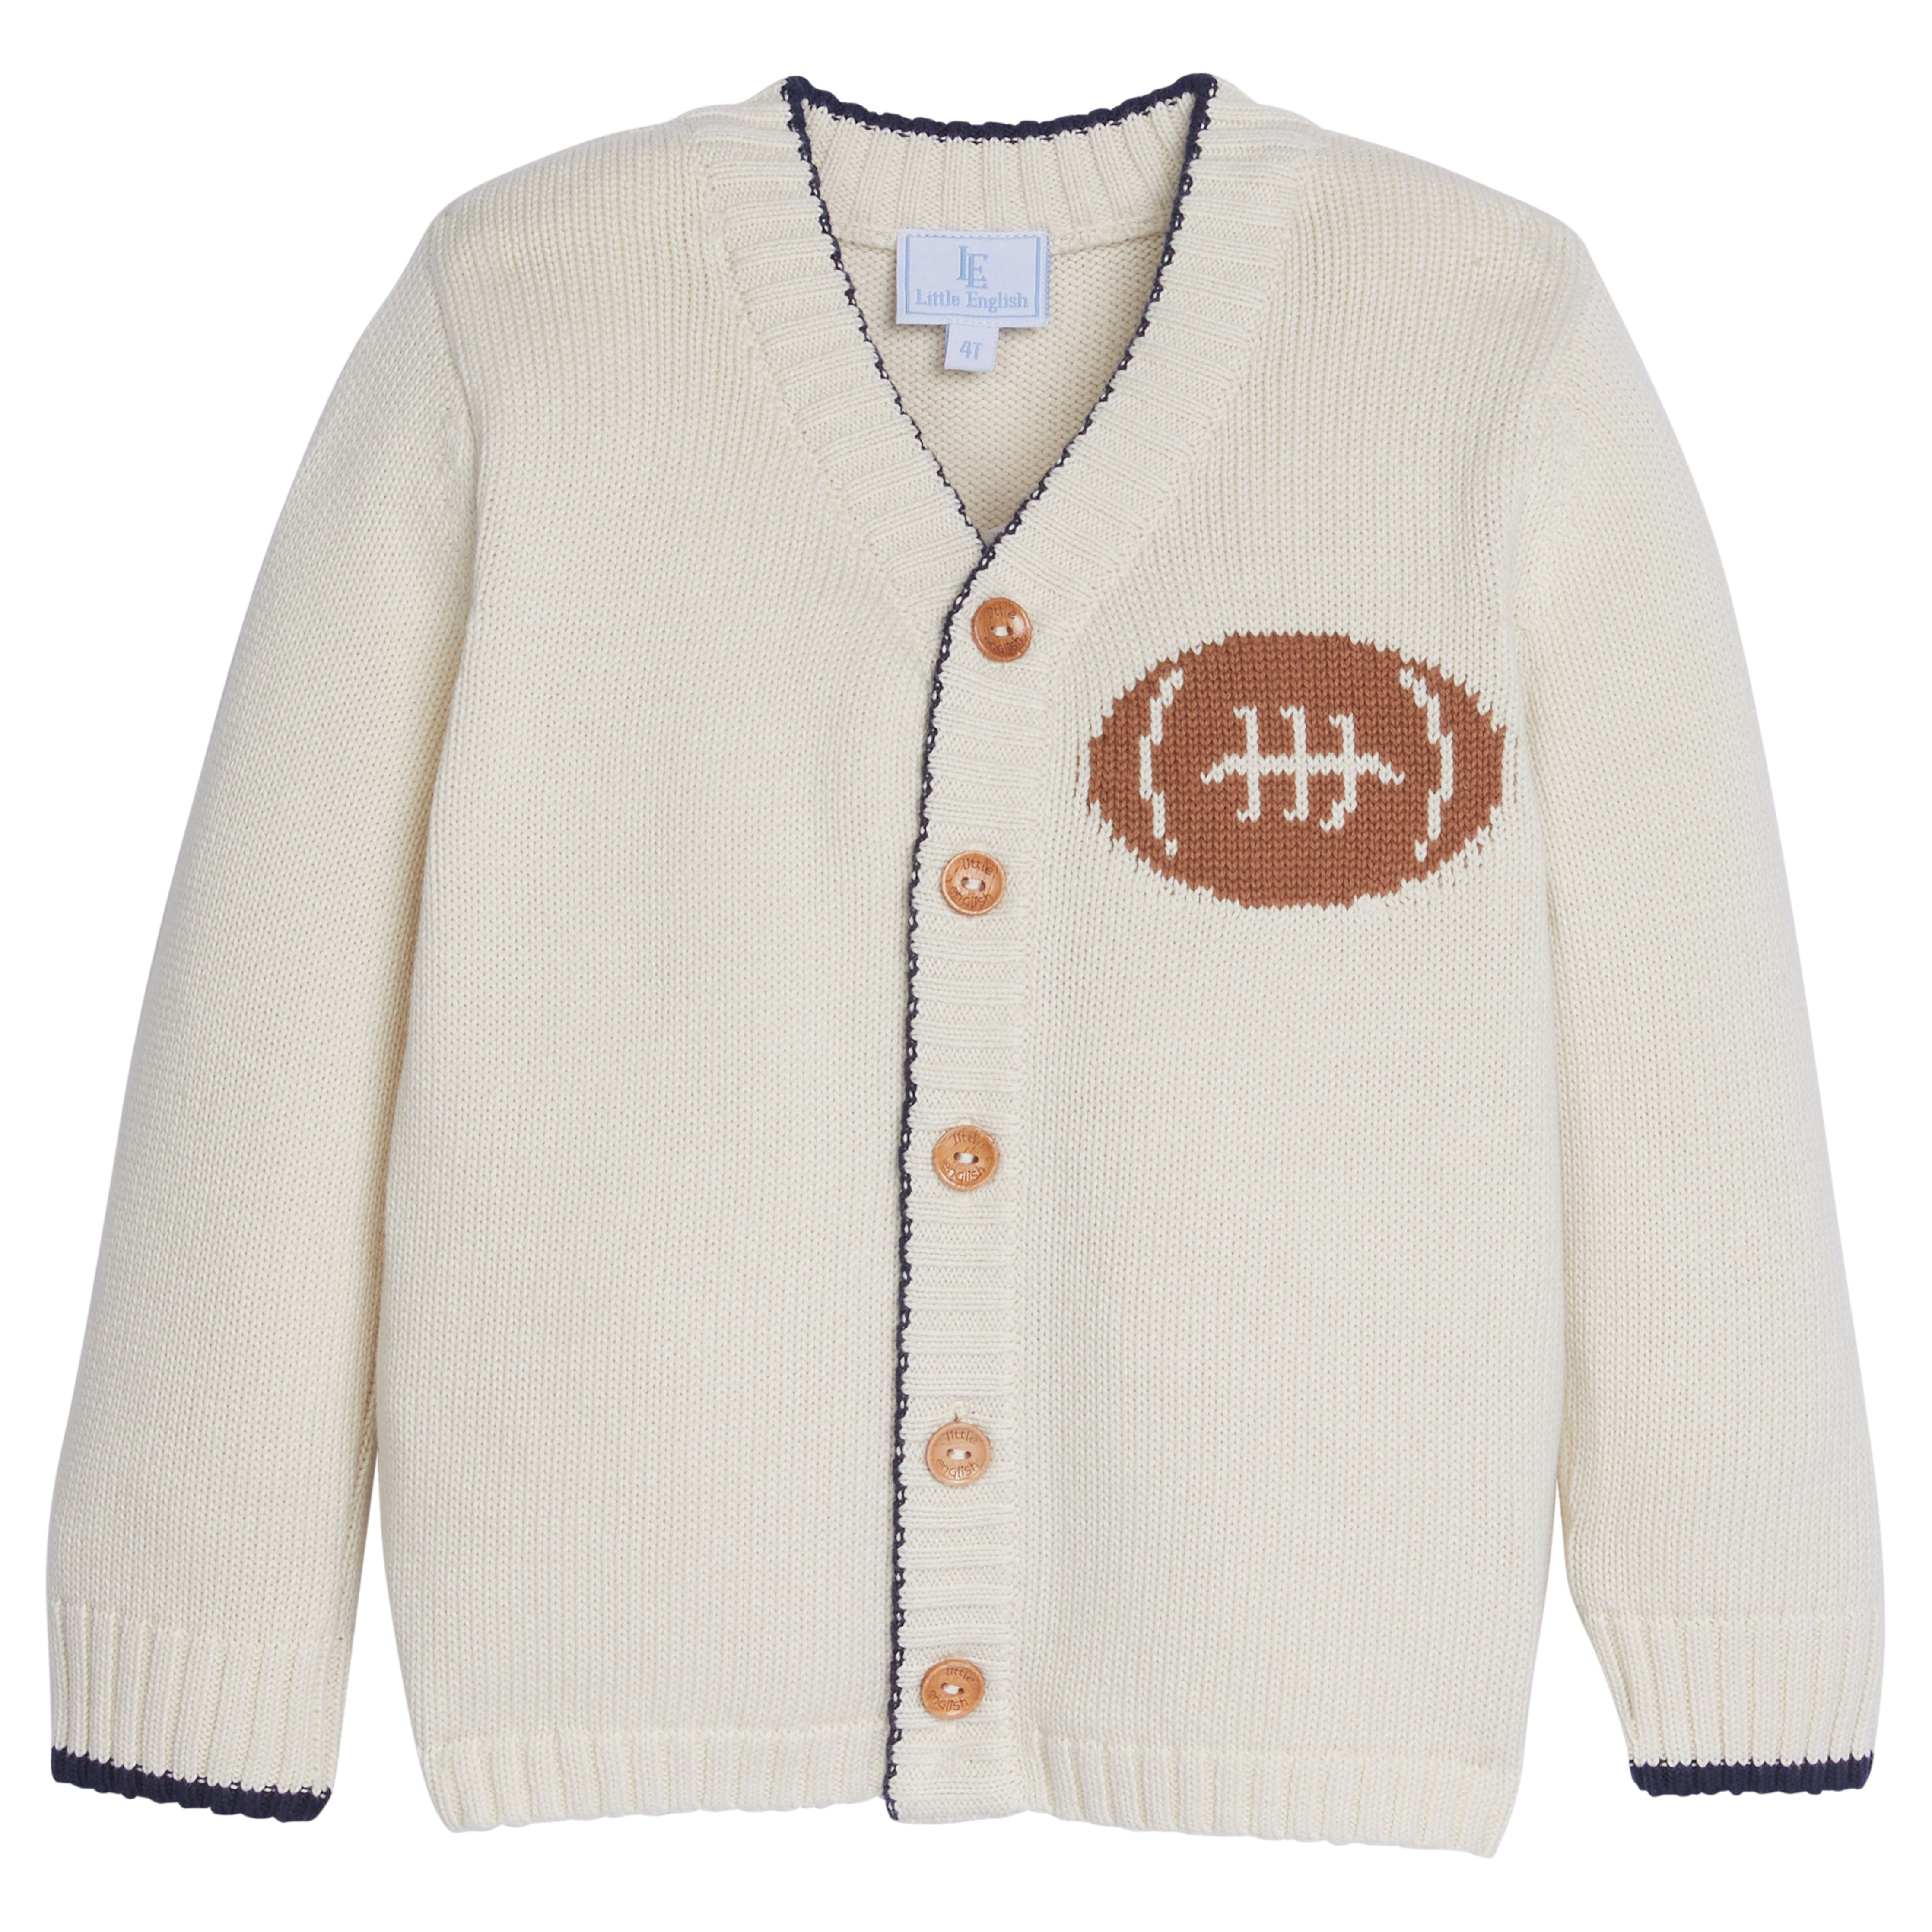 Football Intarsia Sweater